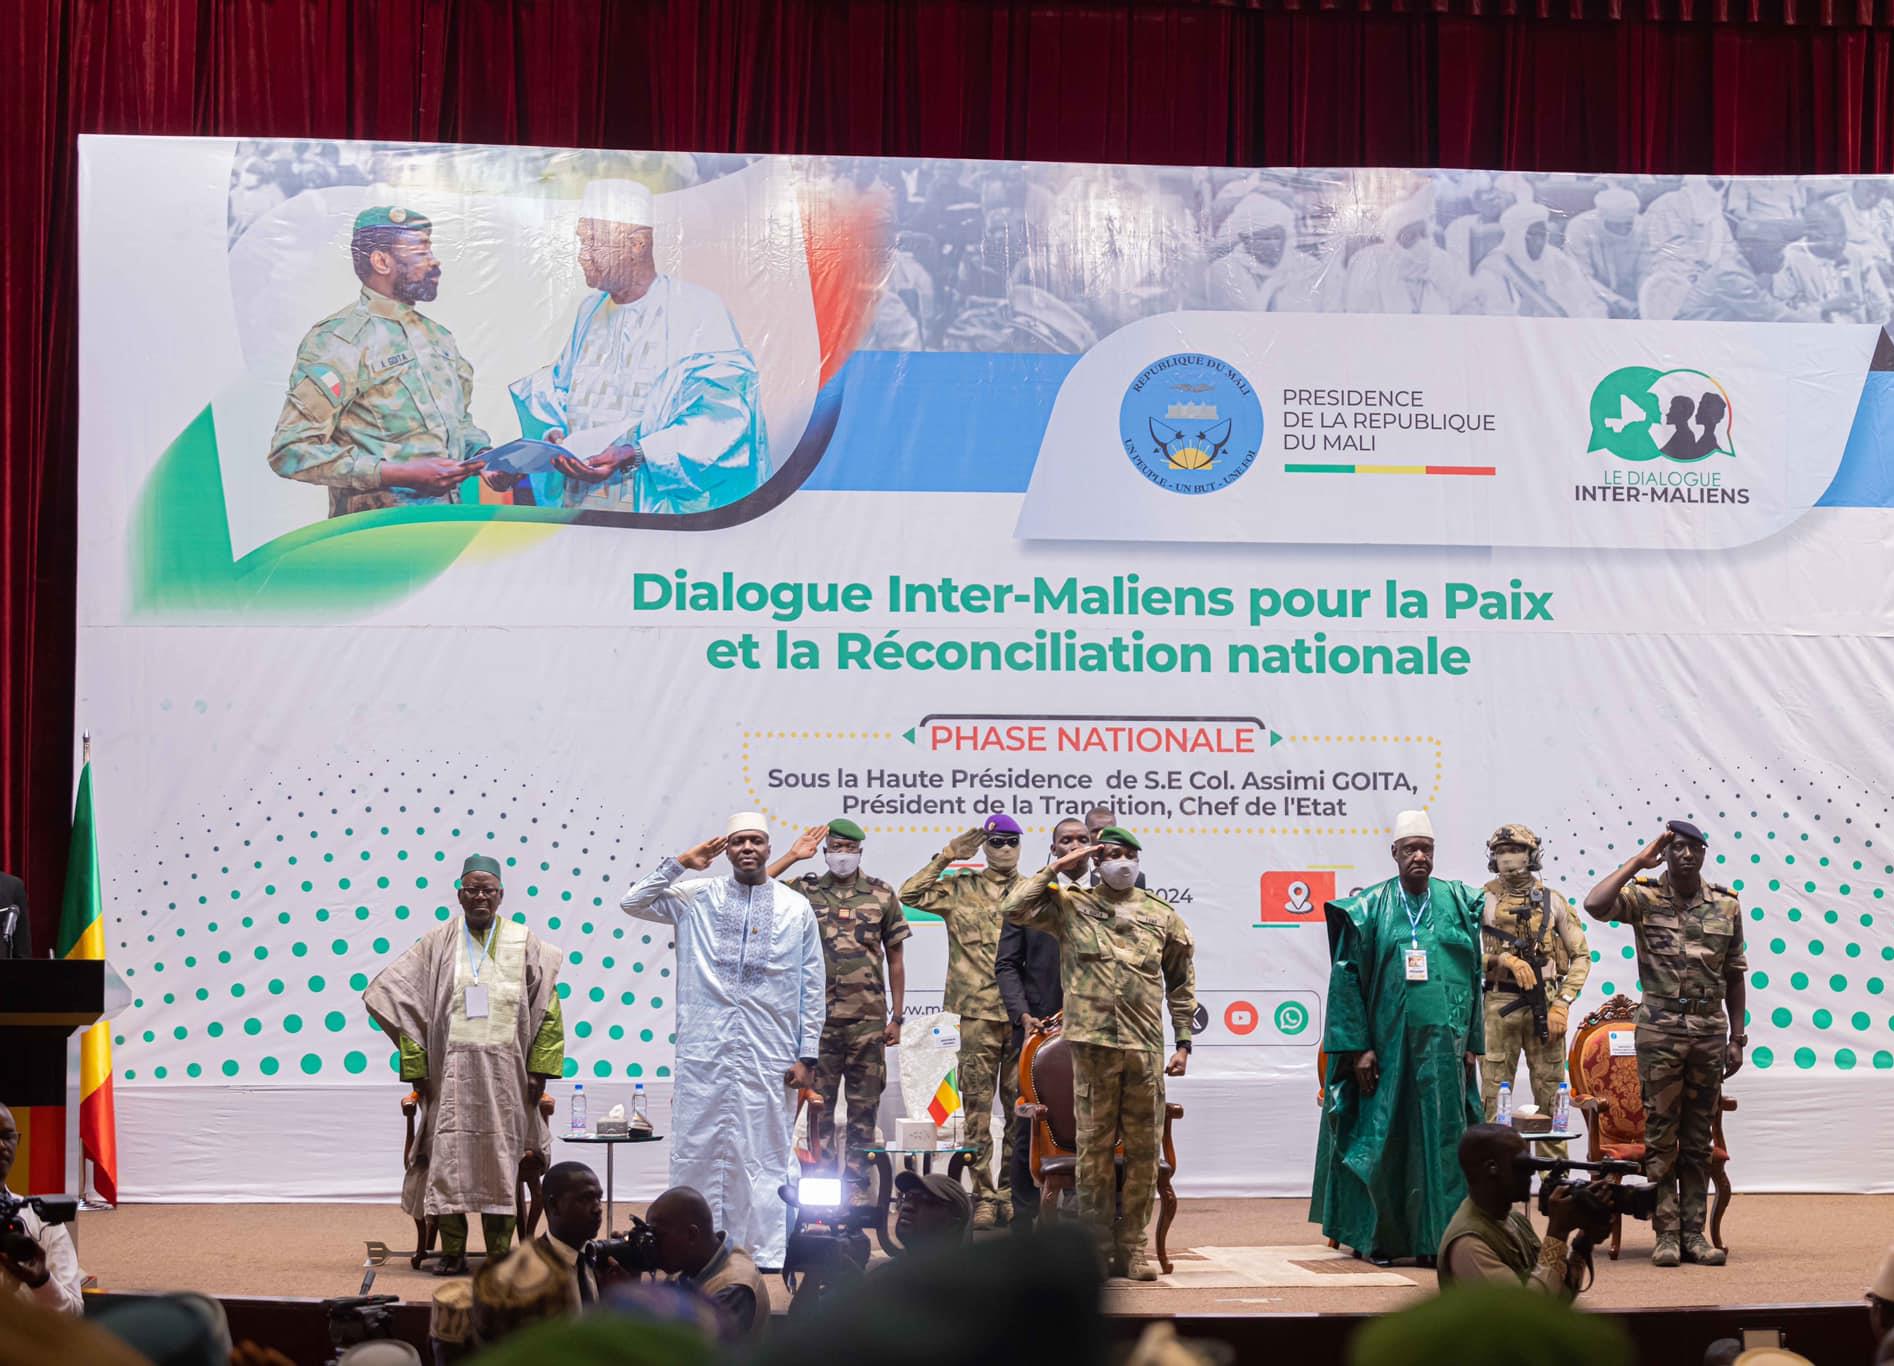 Mali: Ouverture de la phase nationale du dialogue inter-Maliens

